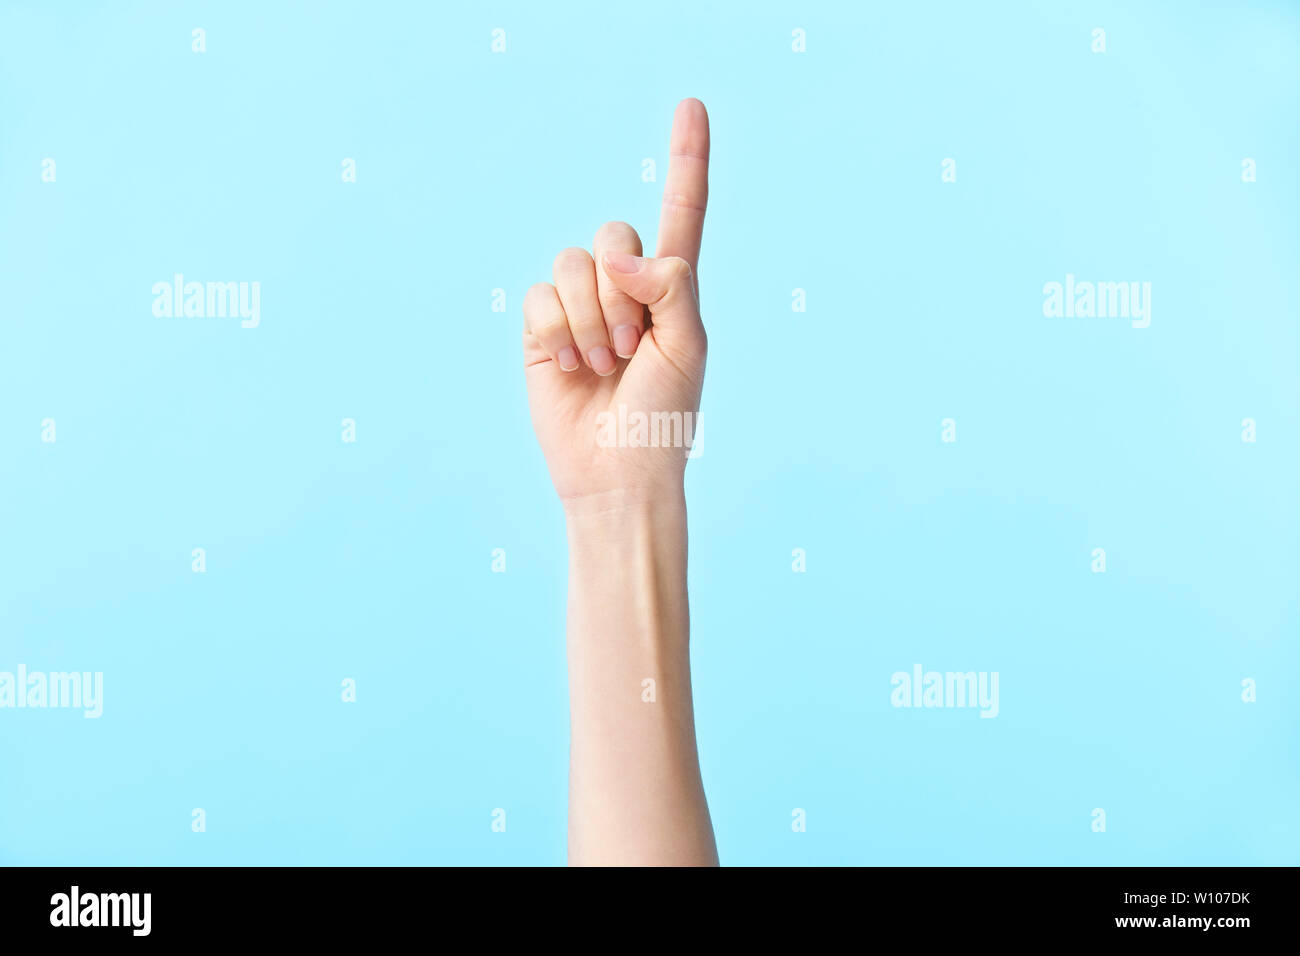 Menschliche Hand zeigt die Nummer eins, auf blauem Hintergrund isoliert Stockfoto